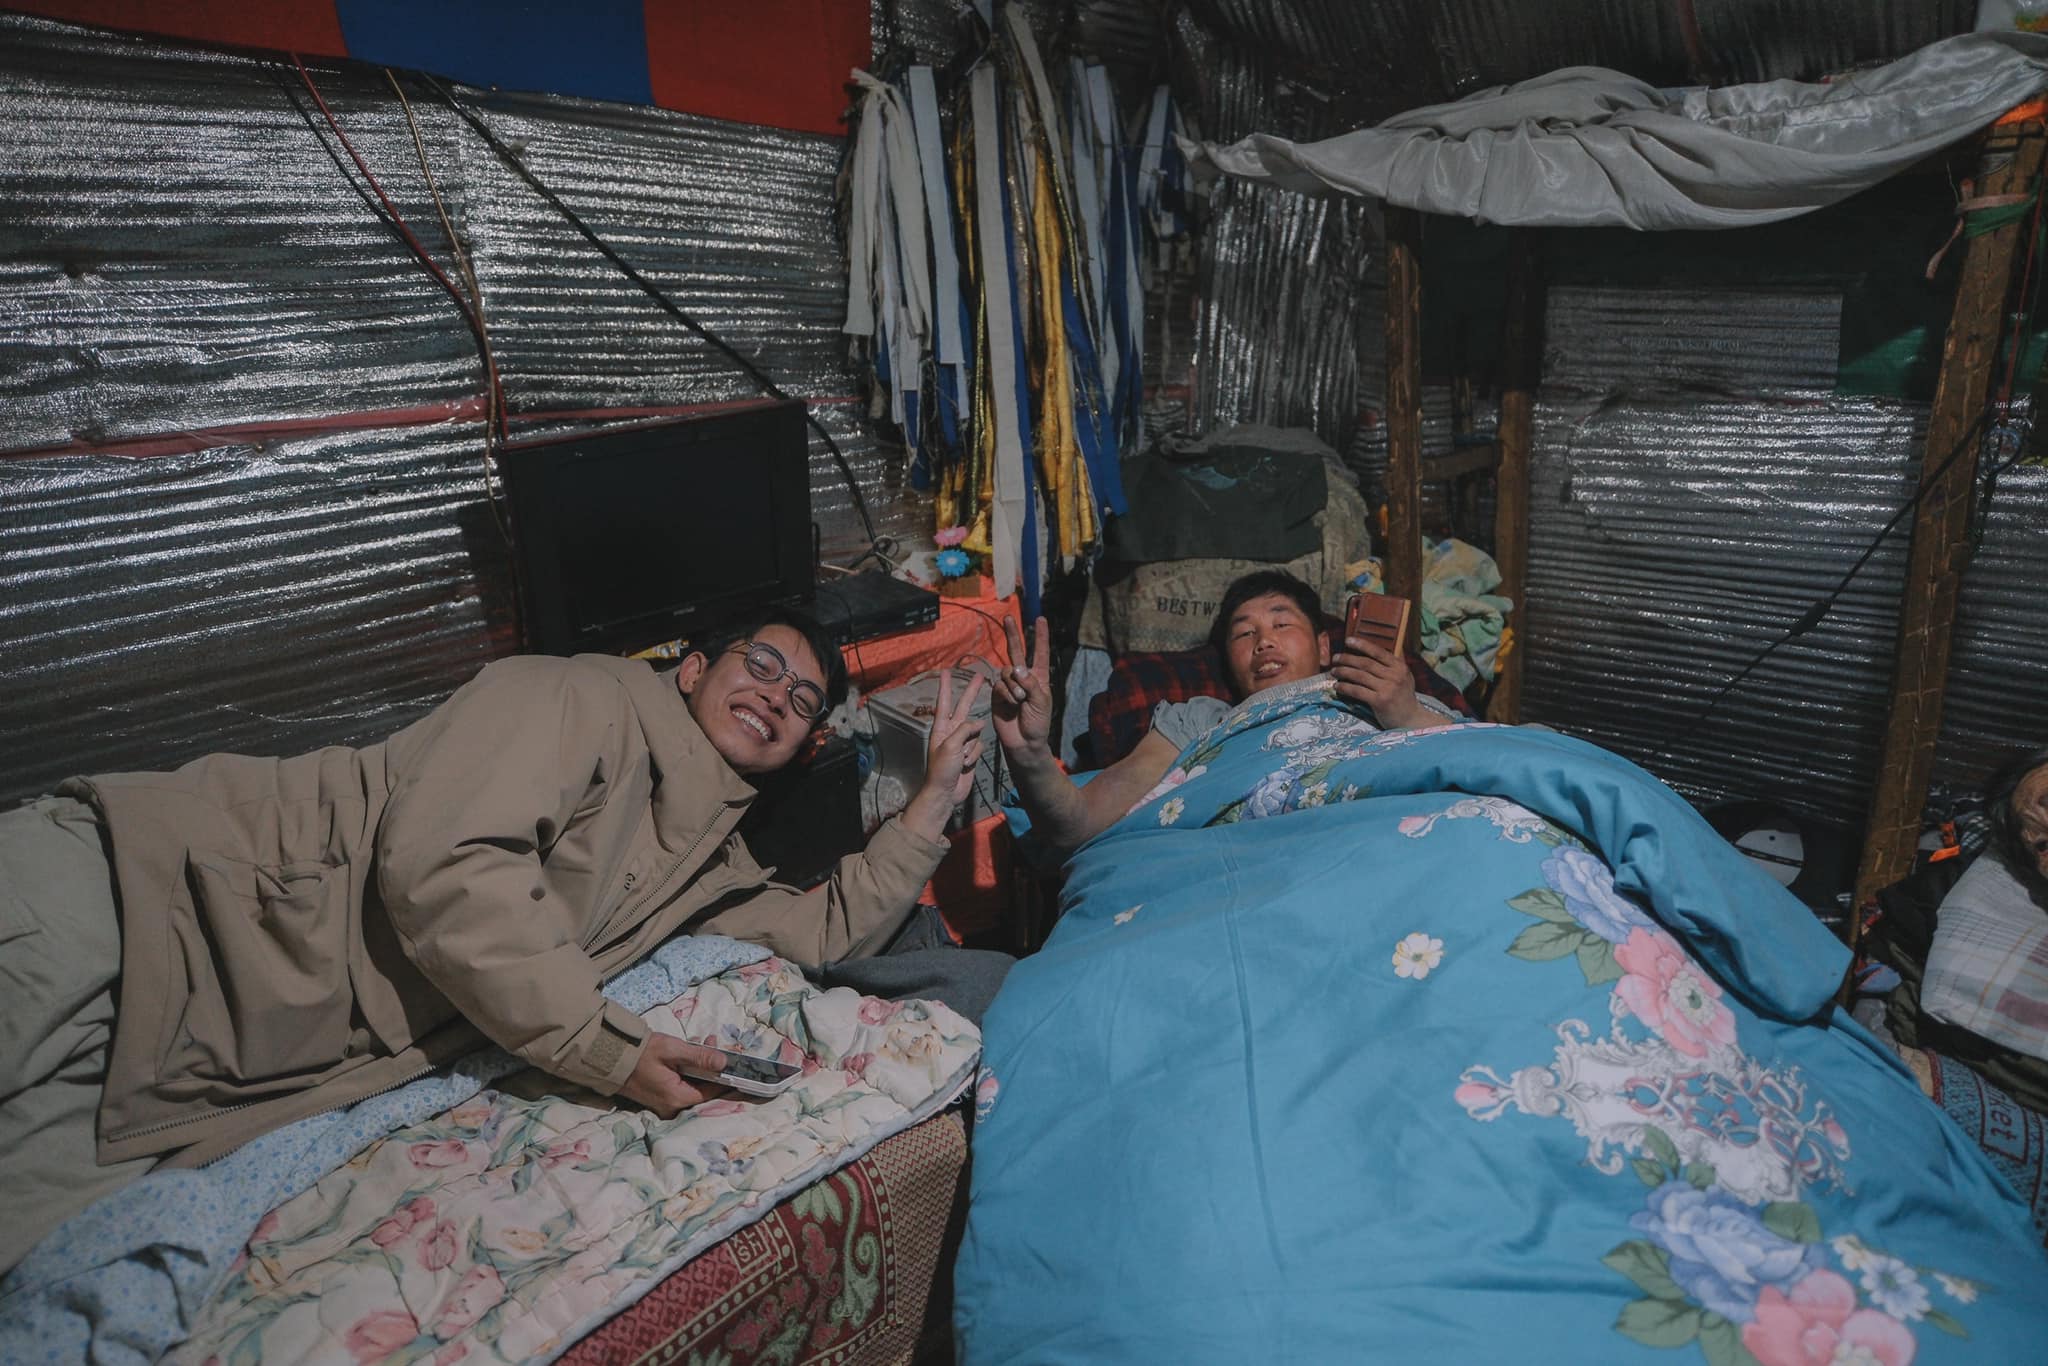 Người dân ở đây sống trong những căn teepee, một dạng lều tam giác, nhìn có vẻ đơn giản nhưng rất ấm khi vào trong. Ảnh: NVCC